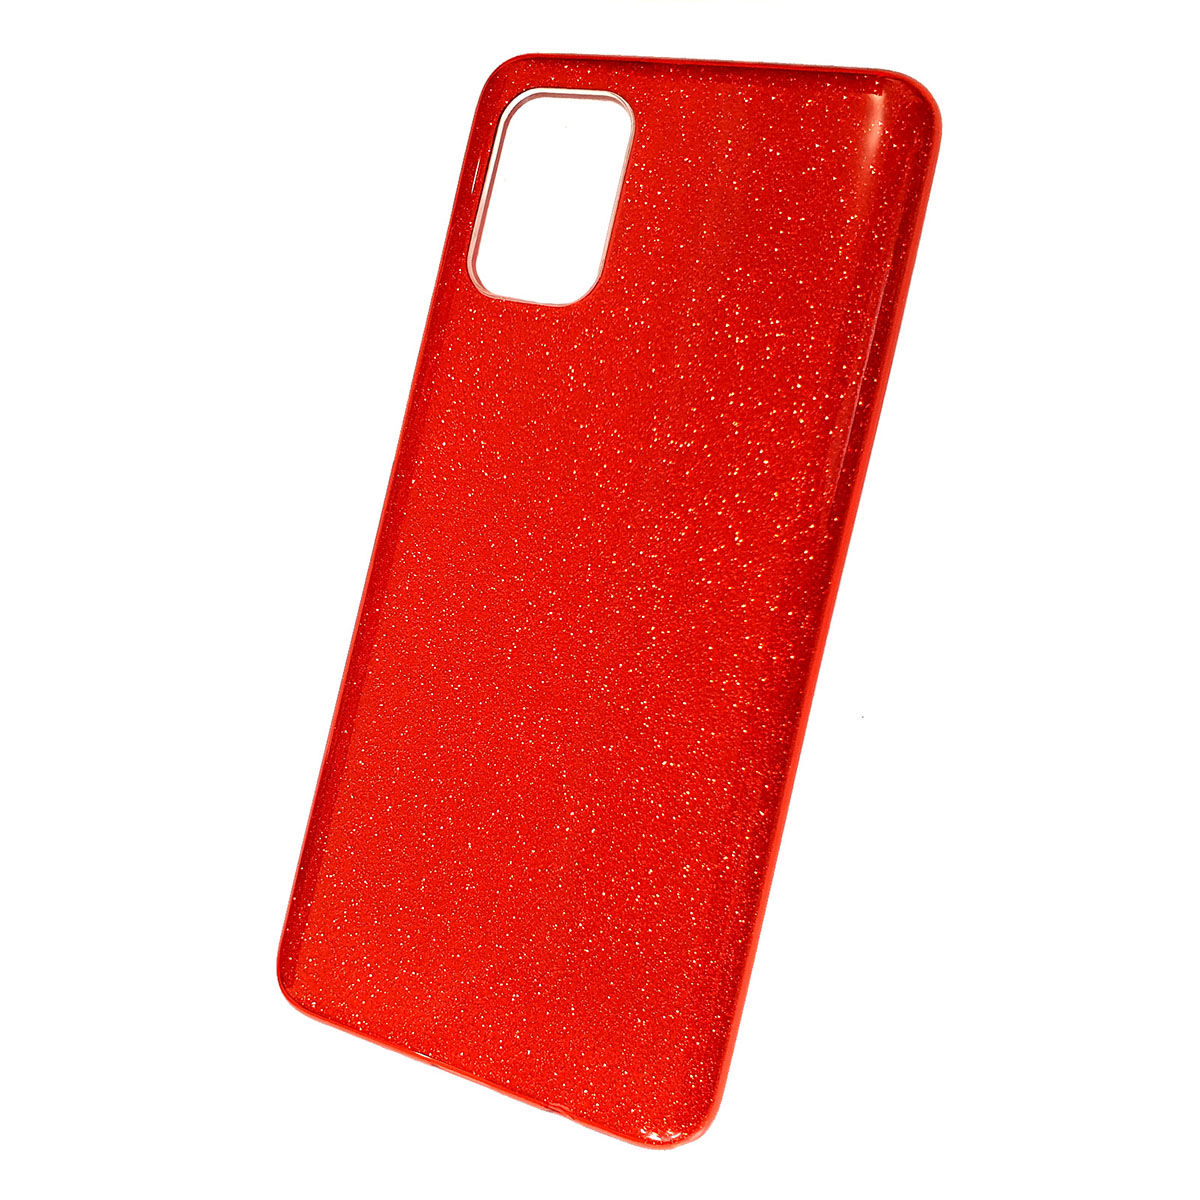 Чехол накладка Shine для SAMSUNG Galaxy A71 2020 (SM-A715), силикон, блестки, цвет красный.